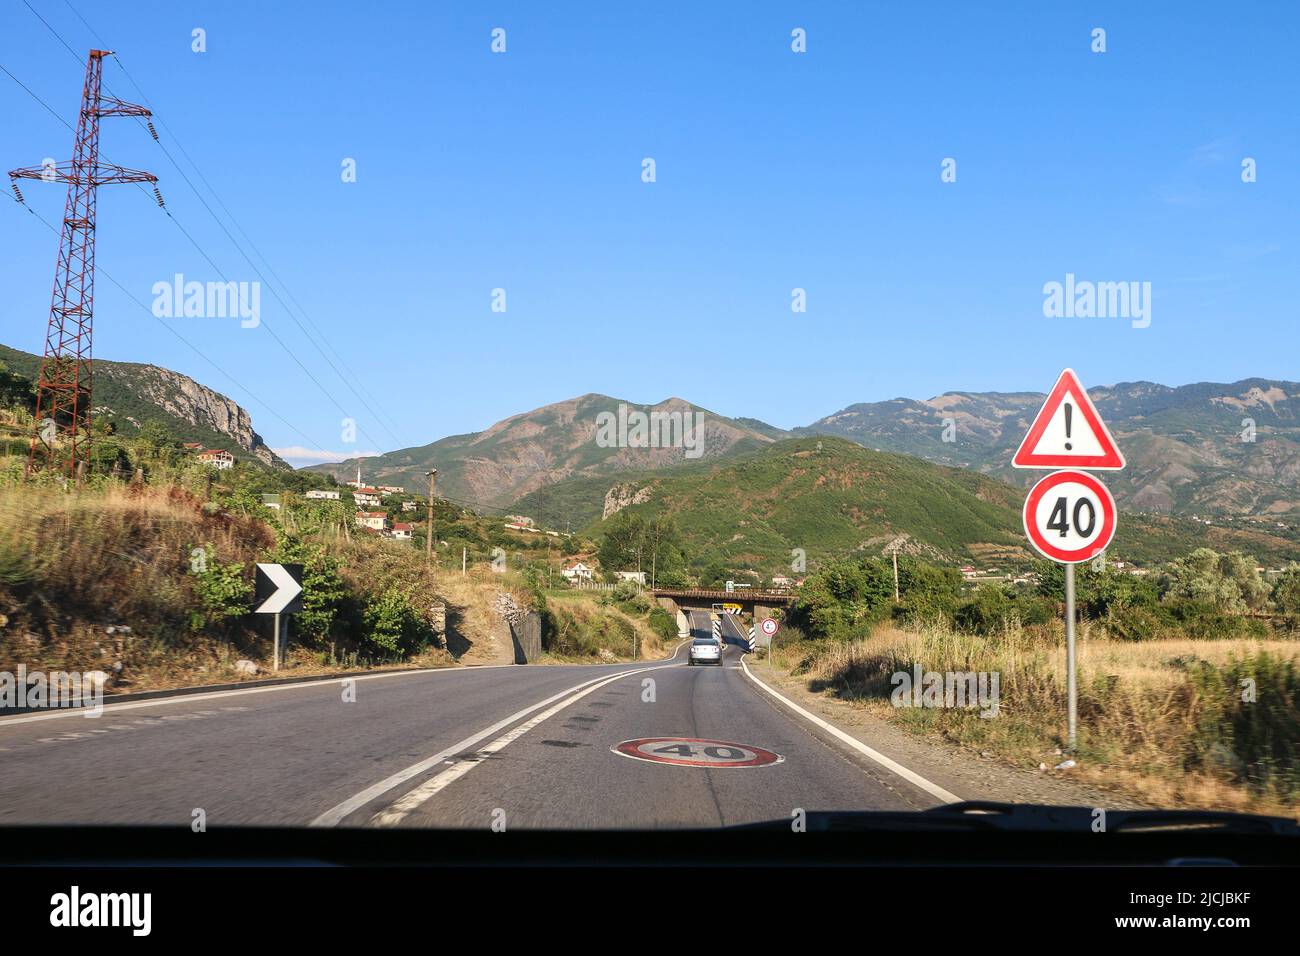 Albanien - 15.07.2017: Typische Intercity-Straße in Albanien mit Geschwindigkeitsbegrenzung 40 Zeichen, Warnschild, doppelte weiße Linien, aus dem fahrenden Auto gefangen Stockfoto